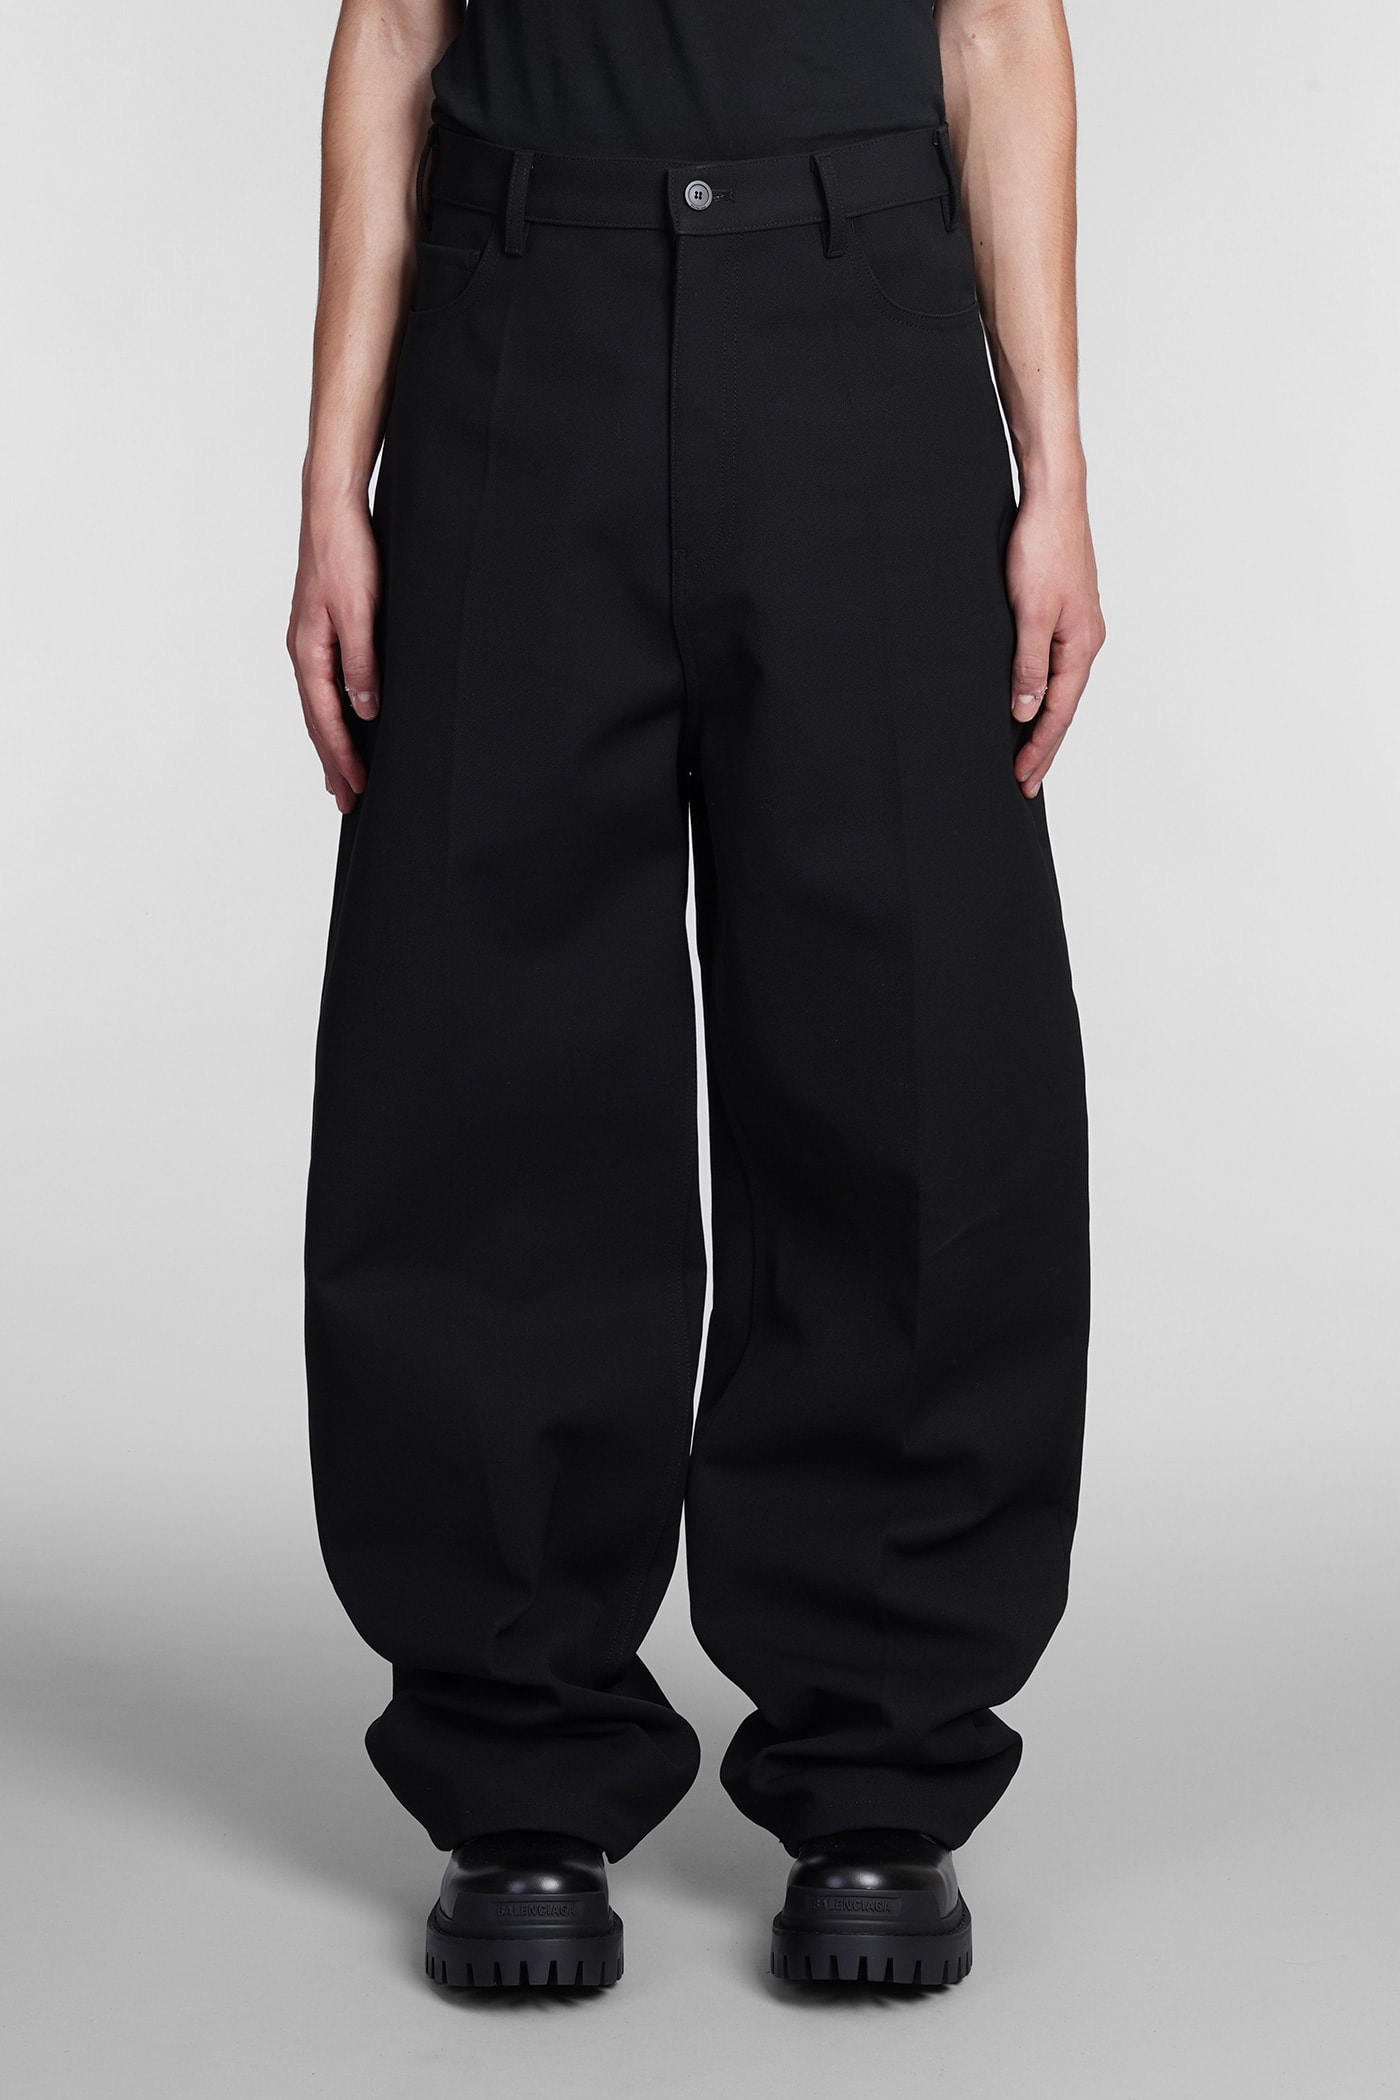 Balenciaga Pants In Black Cotton